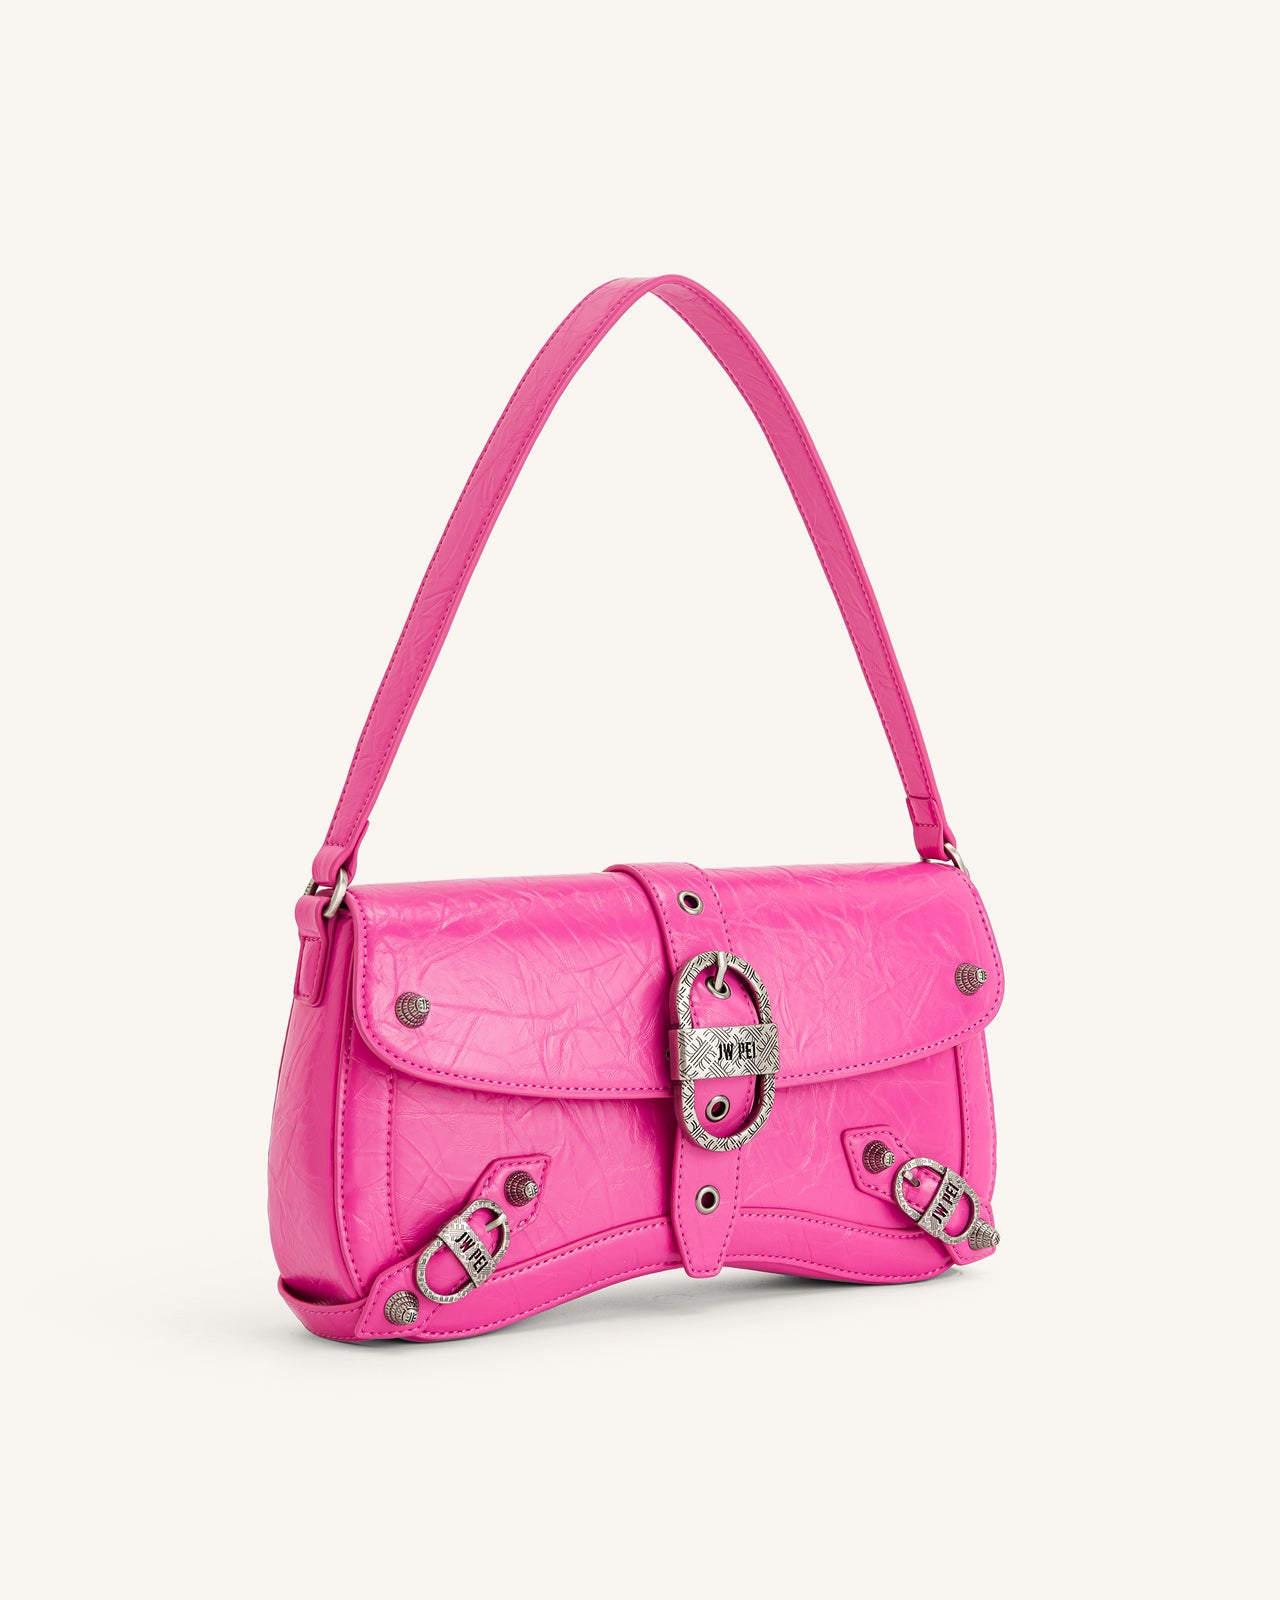 Sia Crushed Shoulder Bag - Bright Pink